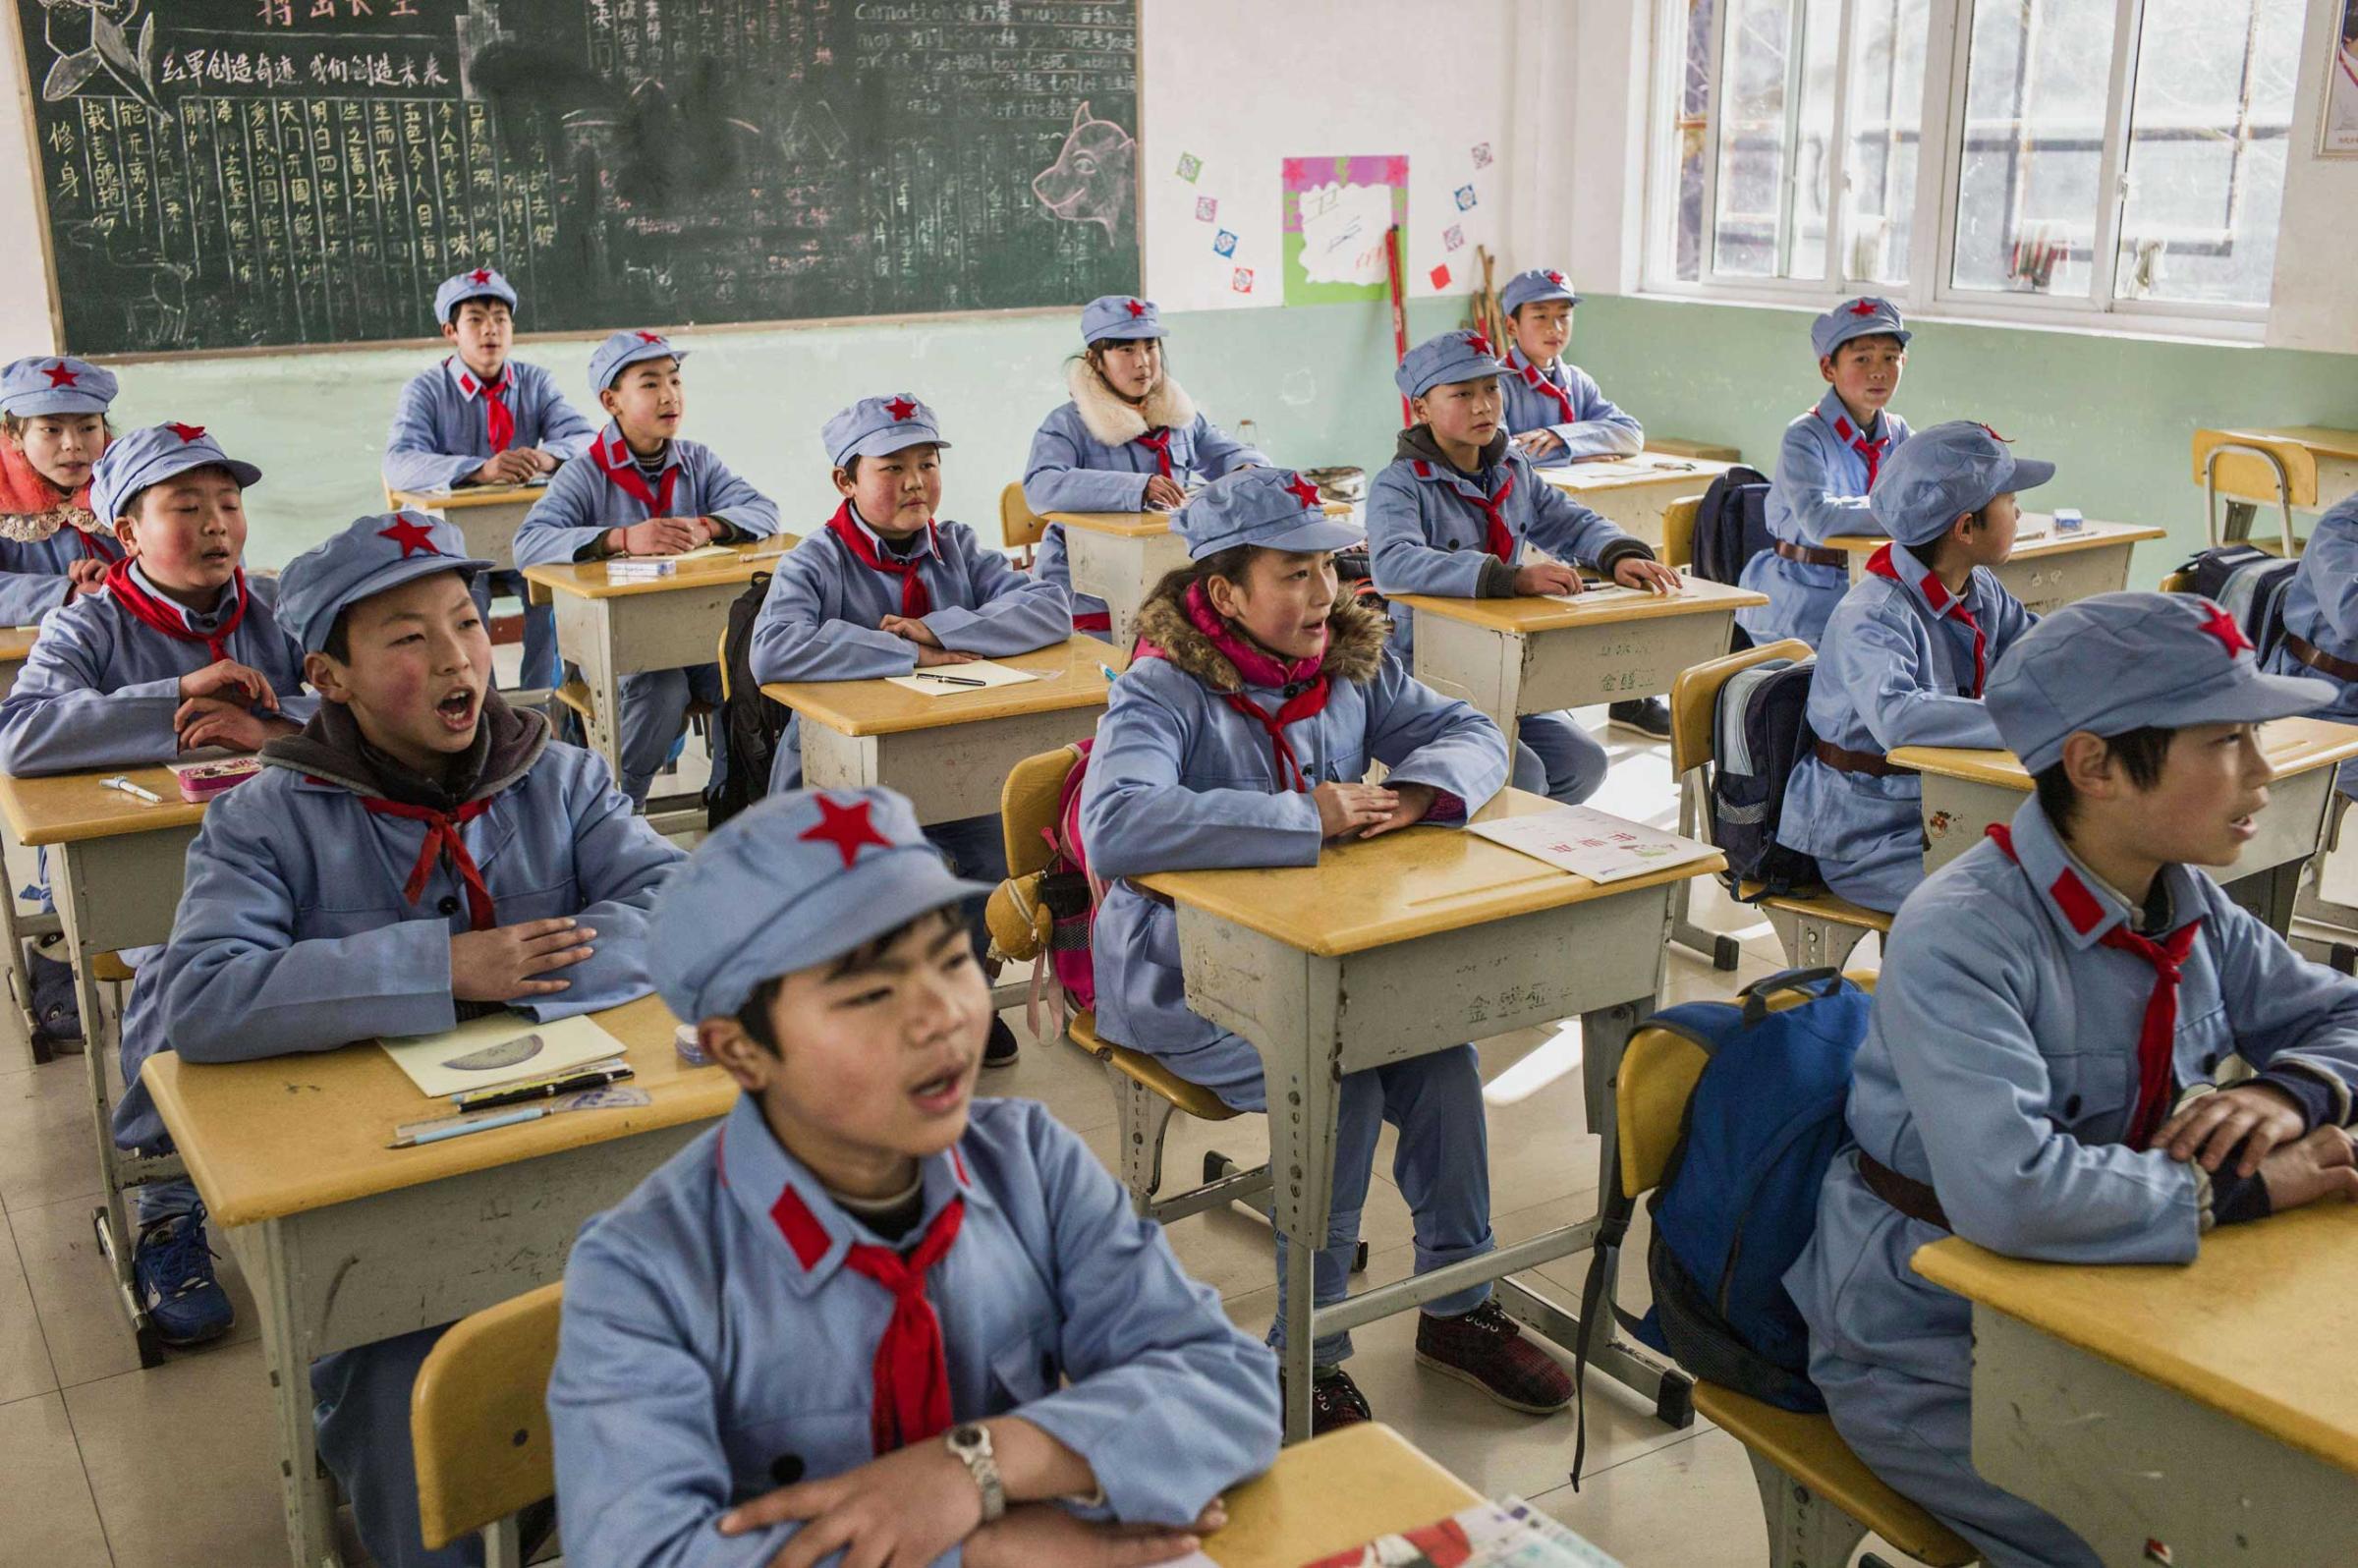 Children during class.